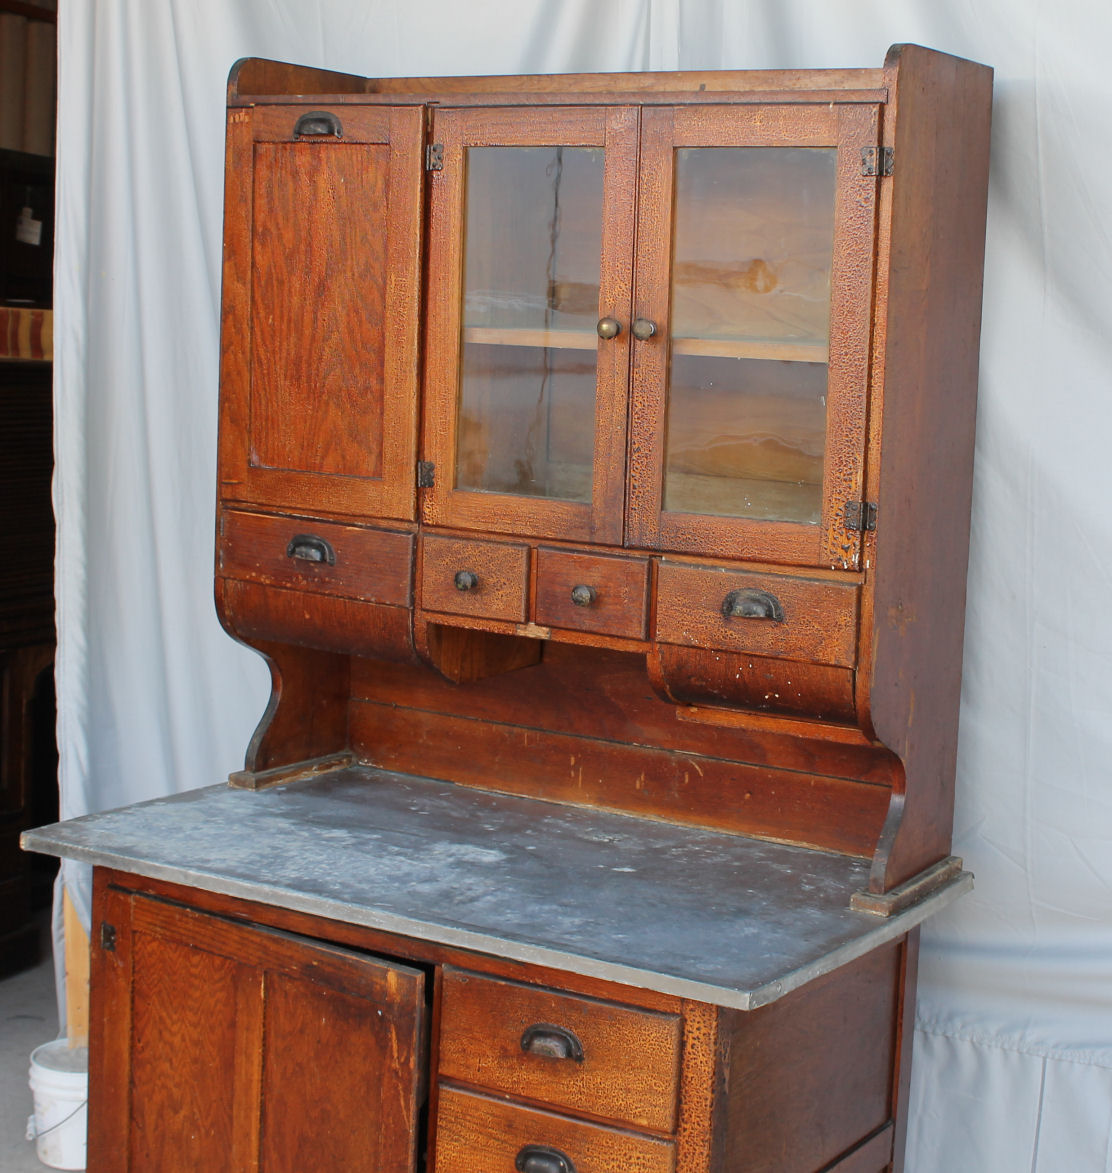 Bargain John's Antiques » Blog Archive Antique Oak Kitchen Cabinet